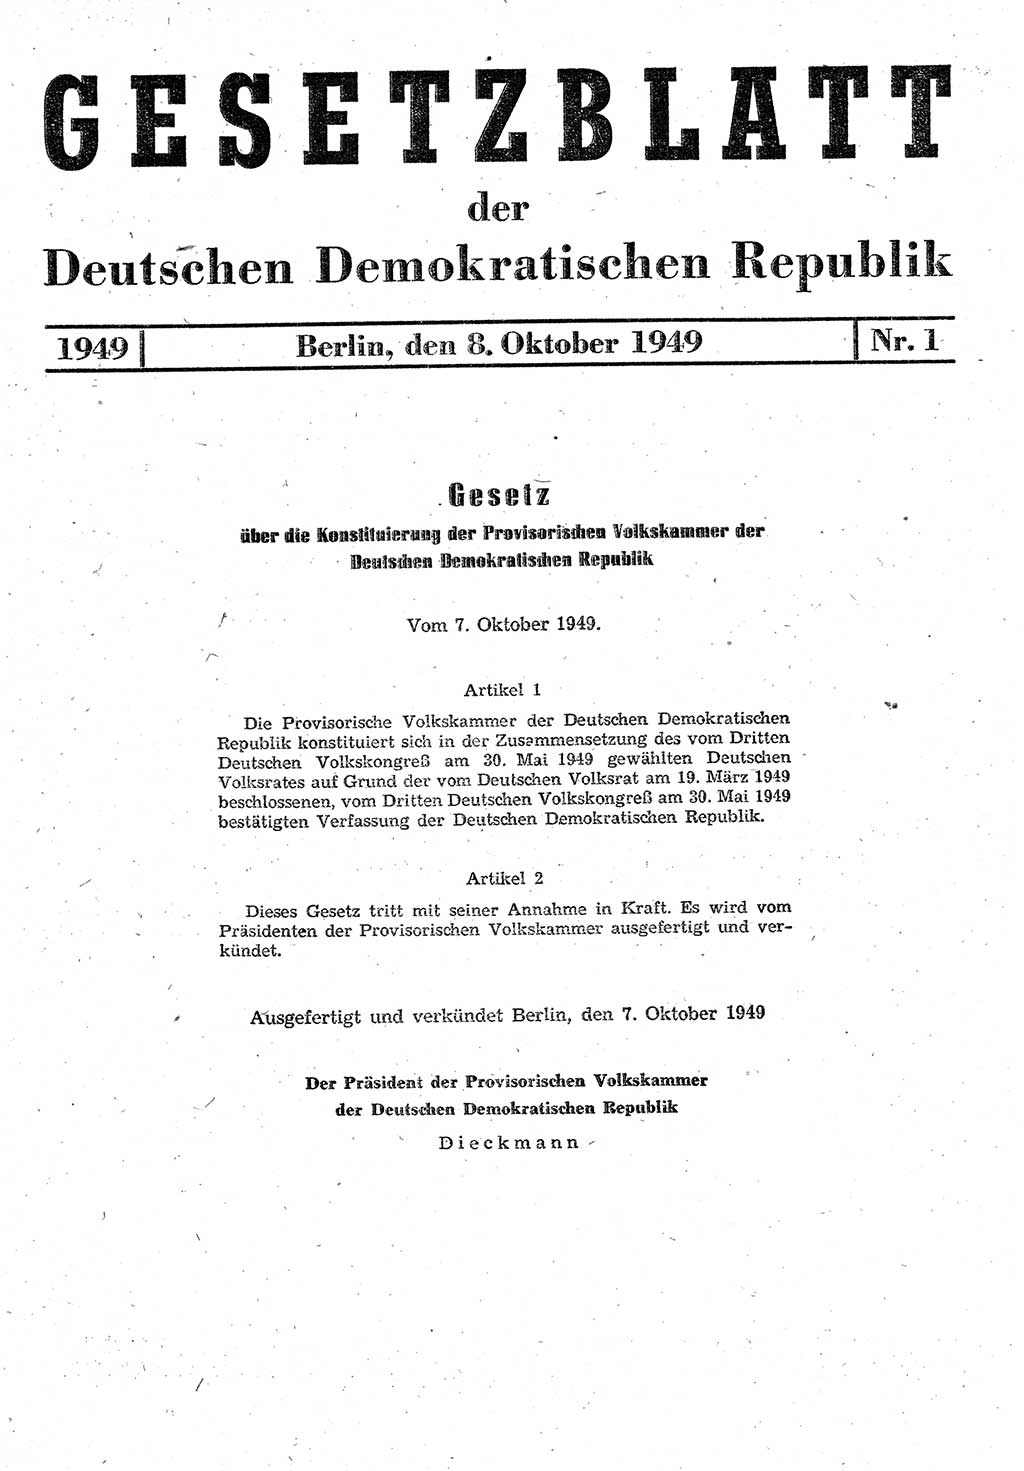 Gesetzblatt (GBl.) der Deutschen Demokratischen Republik (DDR) 1949, Seite 1 (GBl. DDR 1949, S. 1)